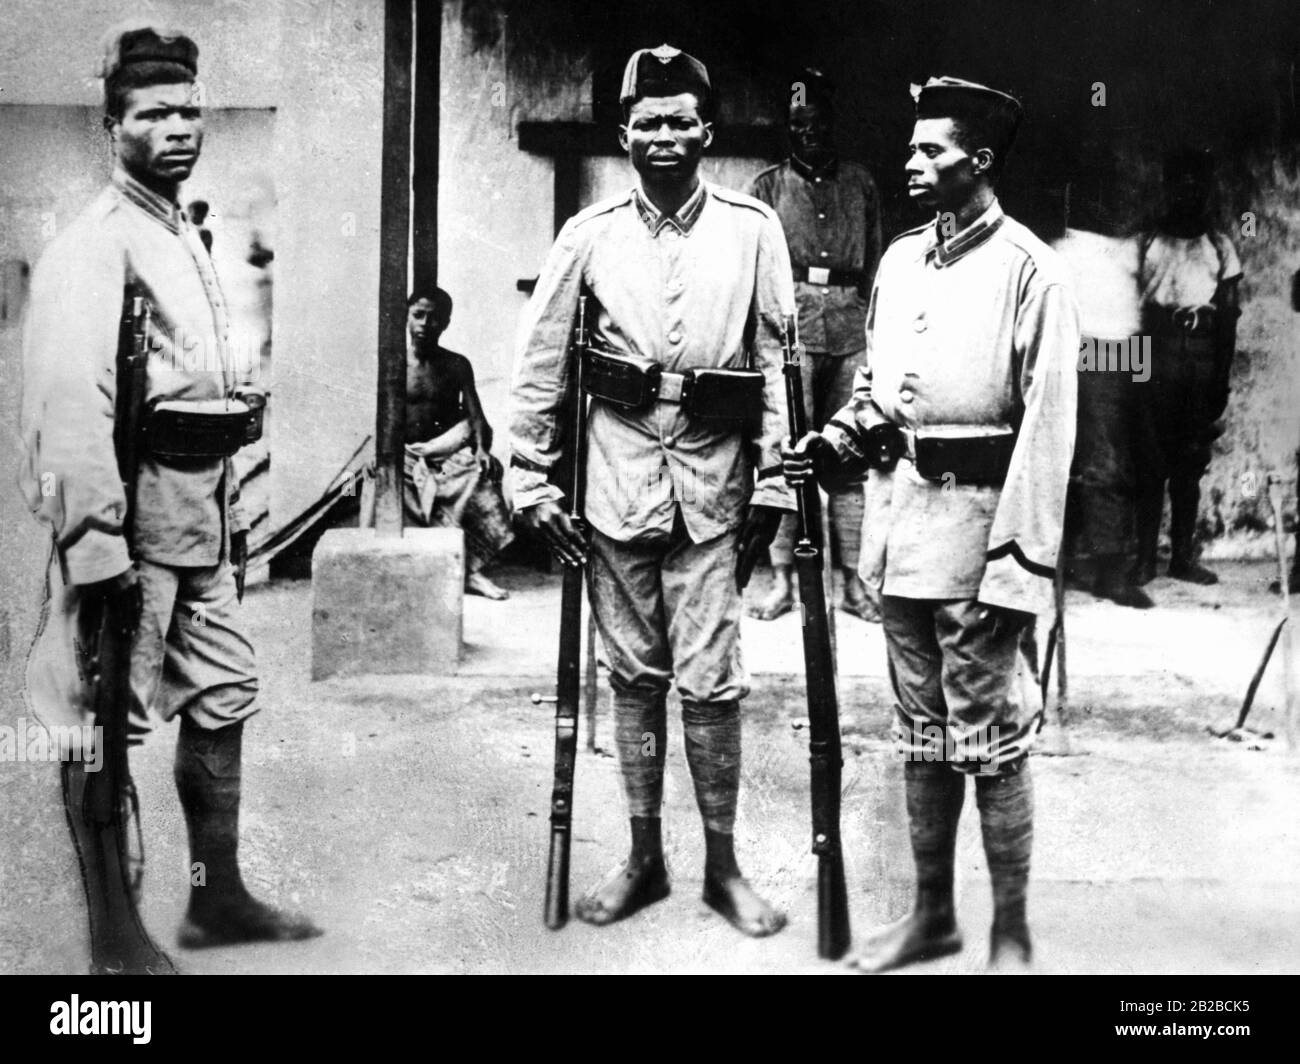 Einheimische Soldaten der deutschen Schutztruppe in Kamerun. Undatiertes Bild. Stockfoto